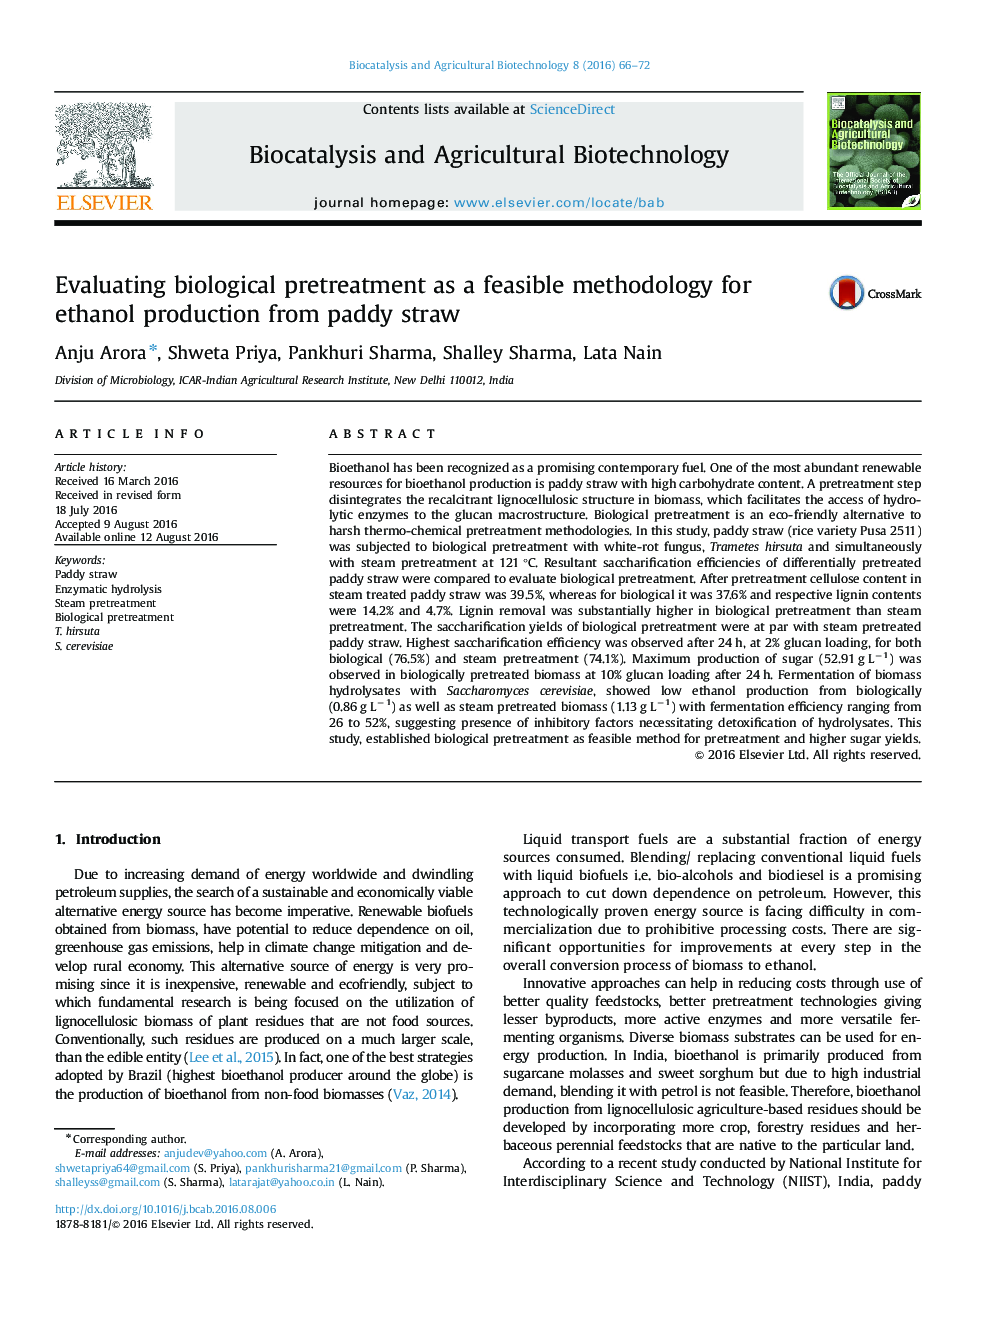 ارزیابی پیشگیری از بیولوژیکی به عنوان روش شناسی قابل اجرا برای تولید اتانول از نی کرت 